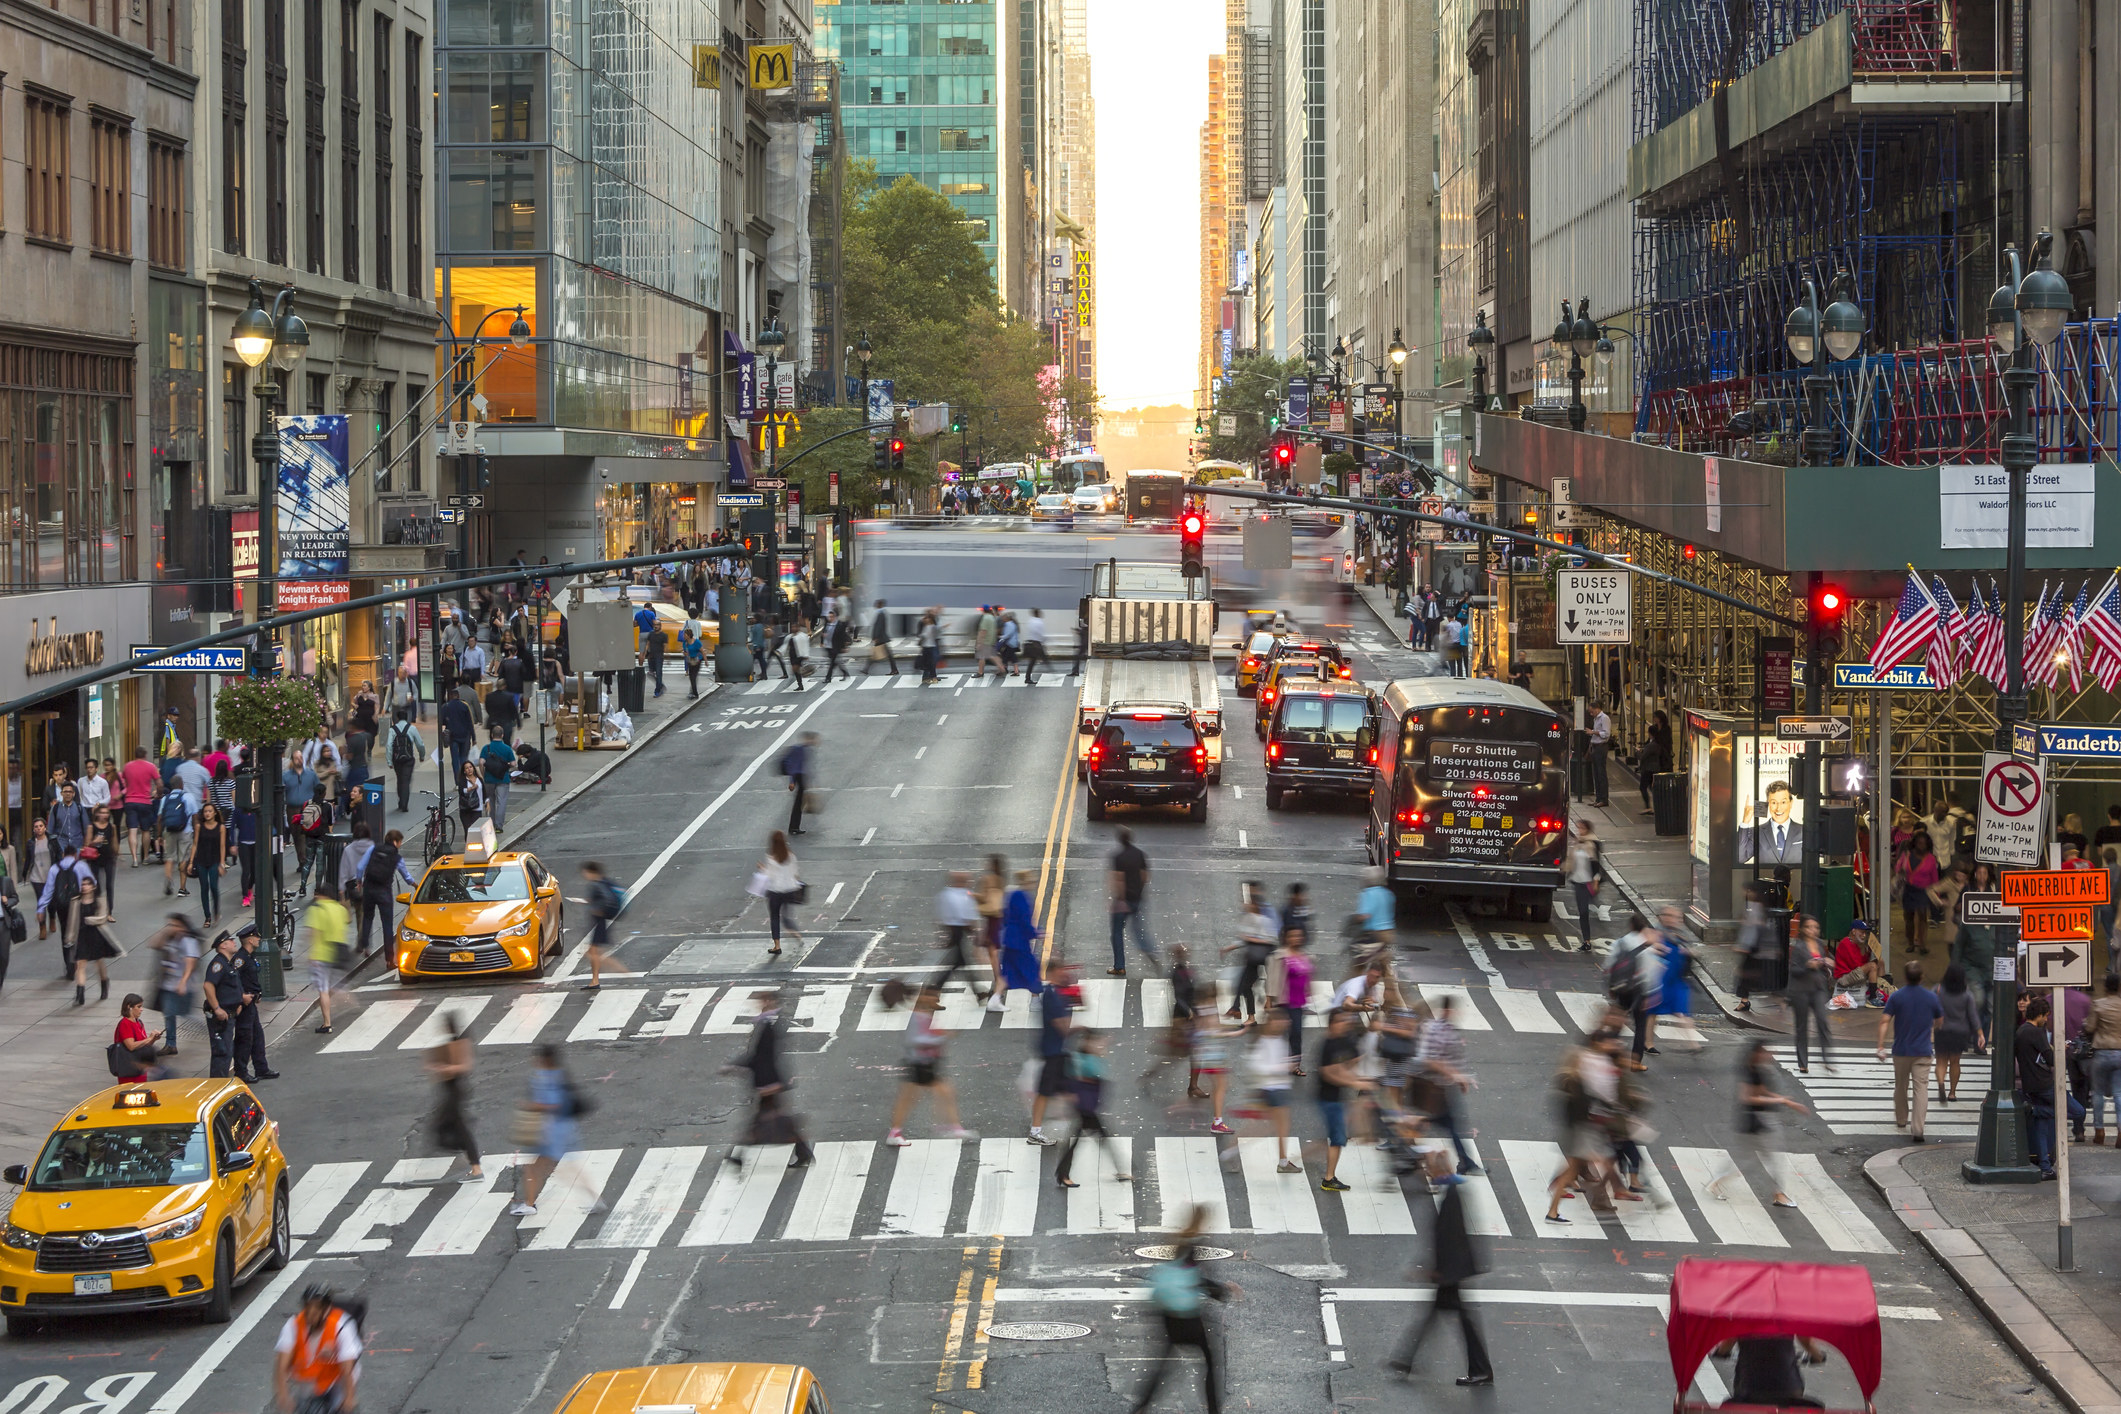 People walking a busy crosswalk in NYC.